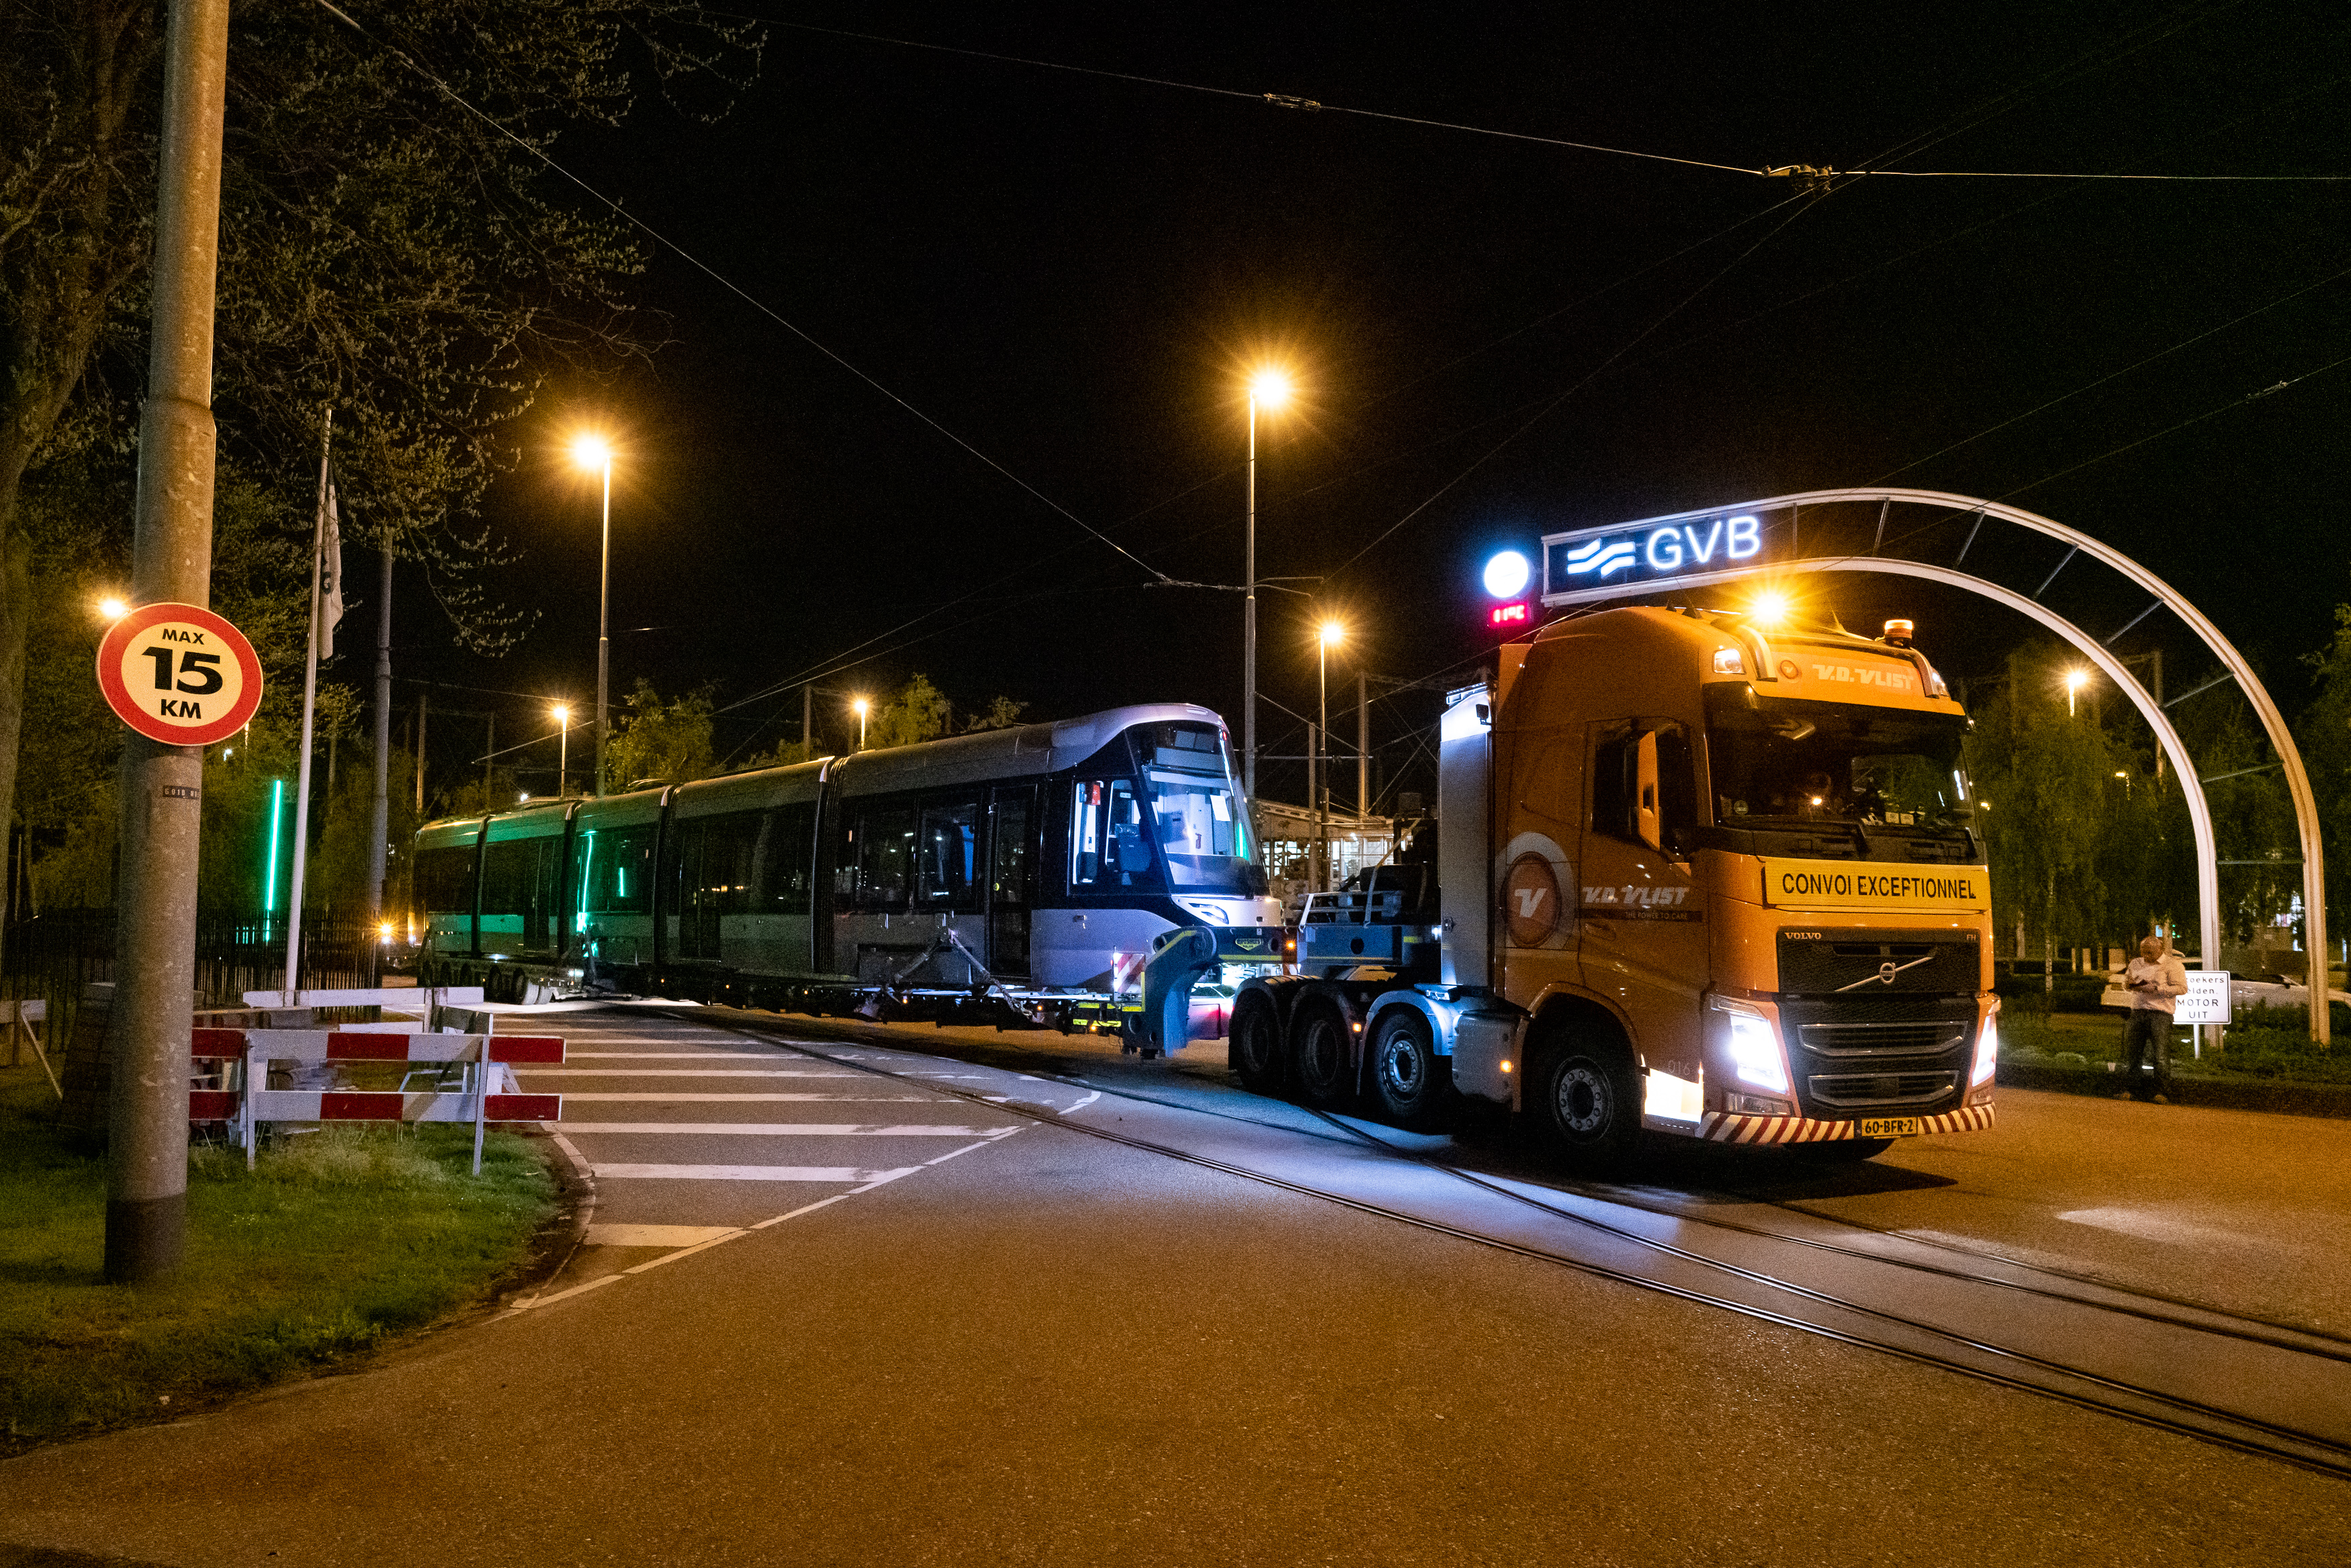 Aankomst van de eerste 15G tram in Nederland in april 2019. 